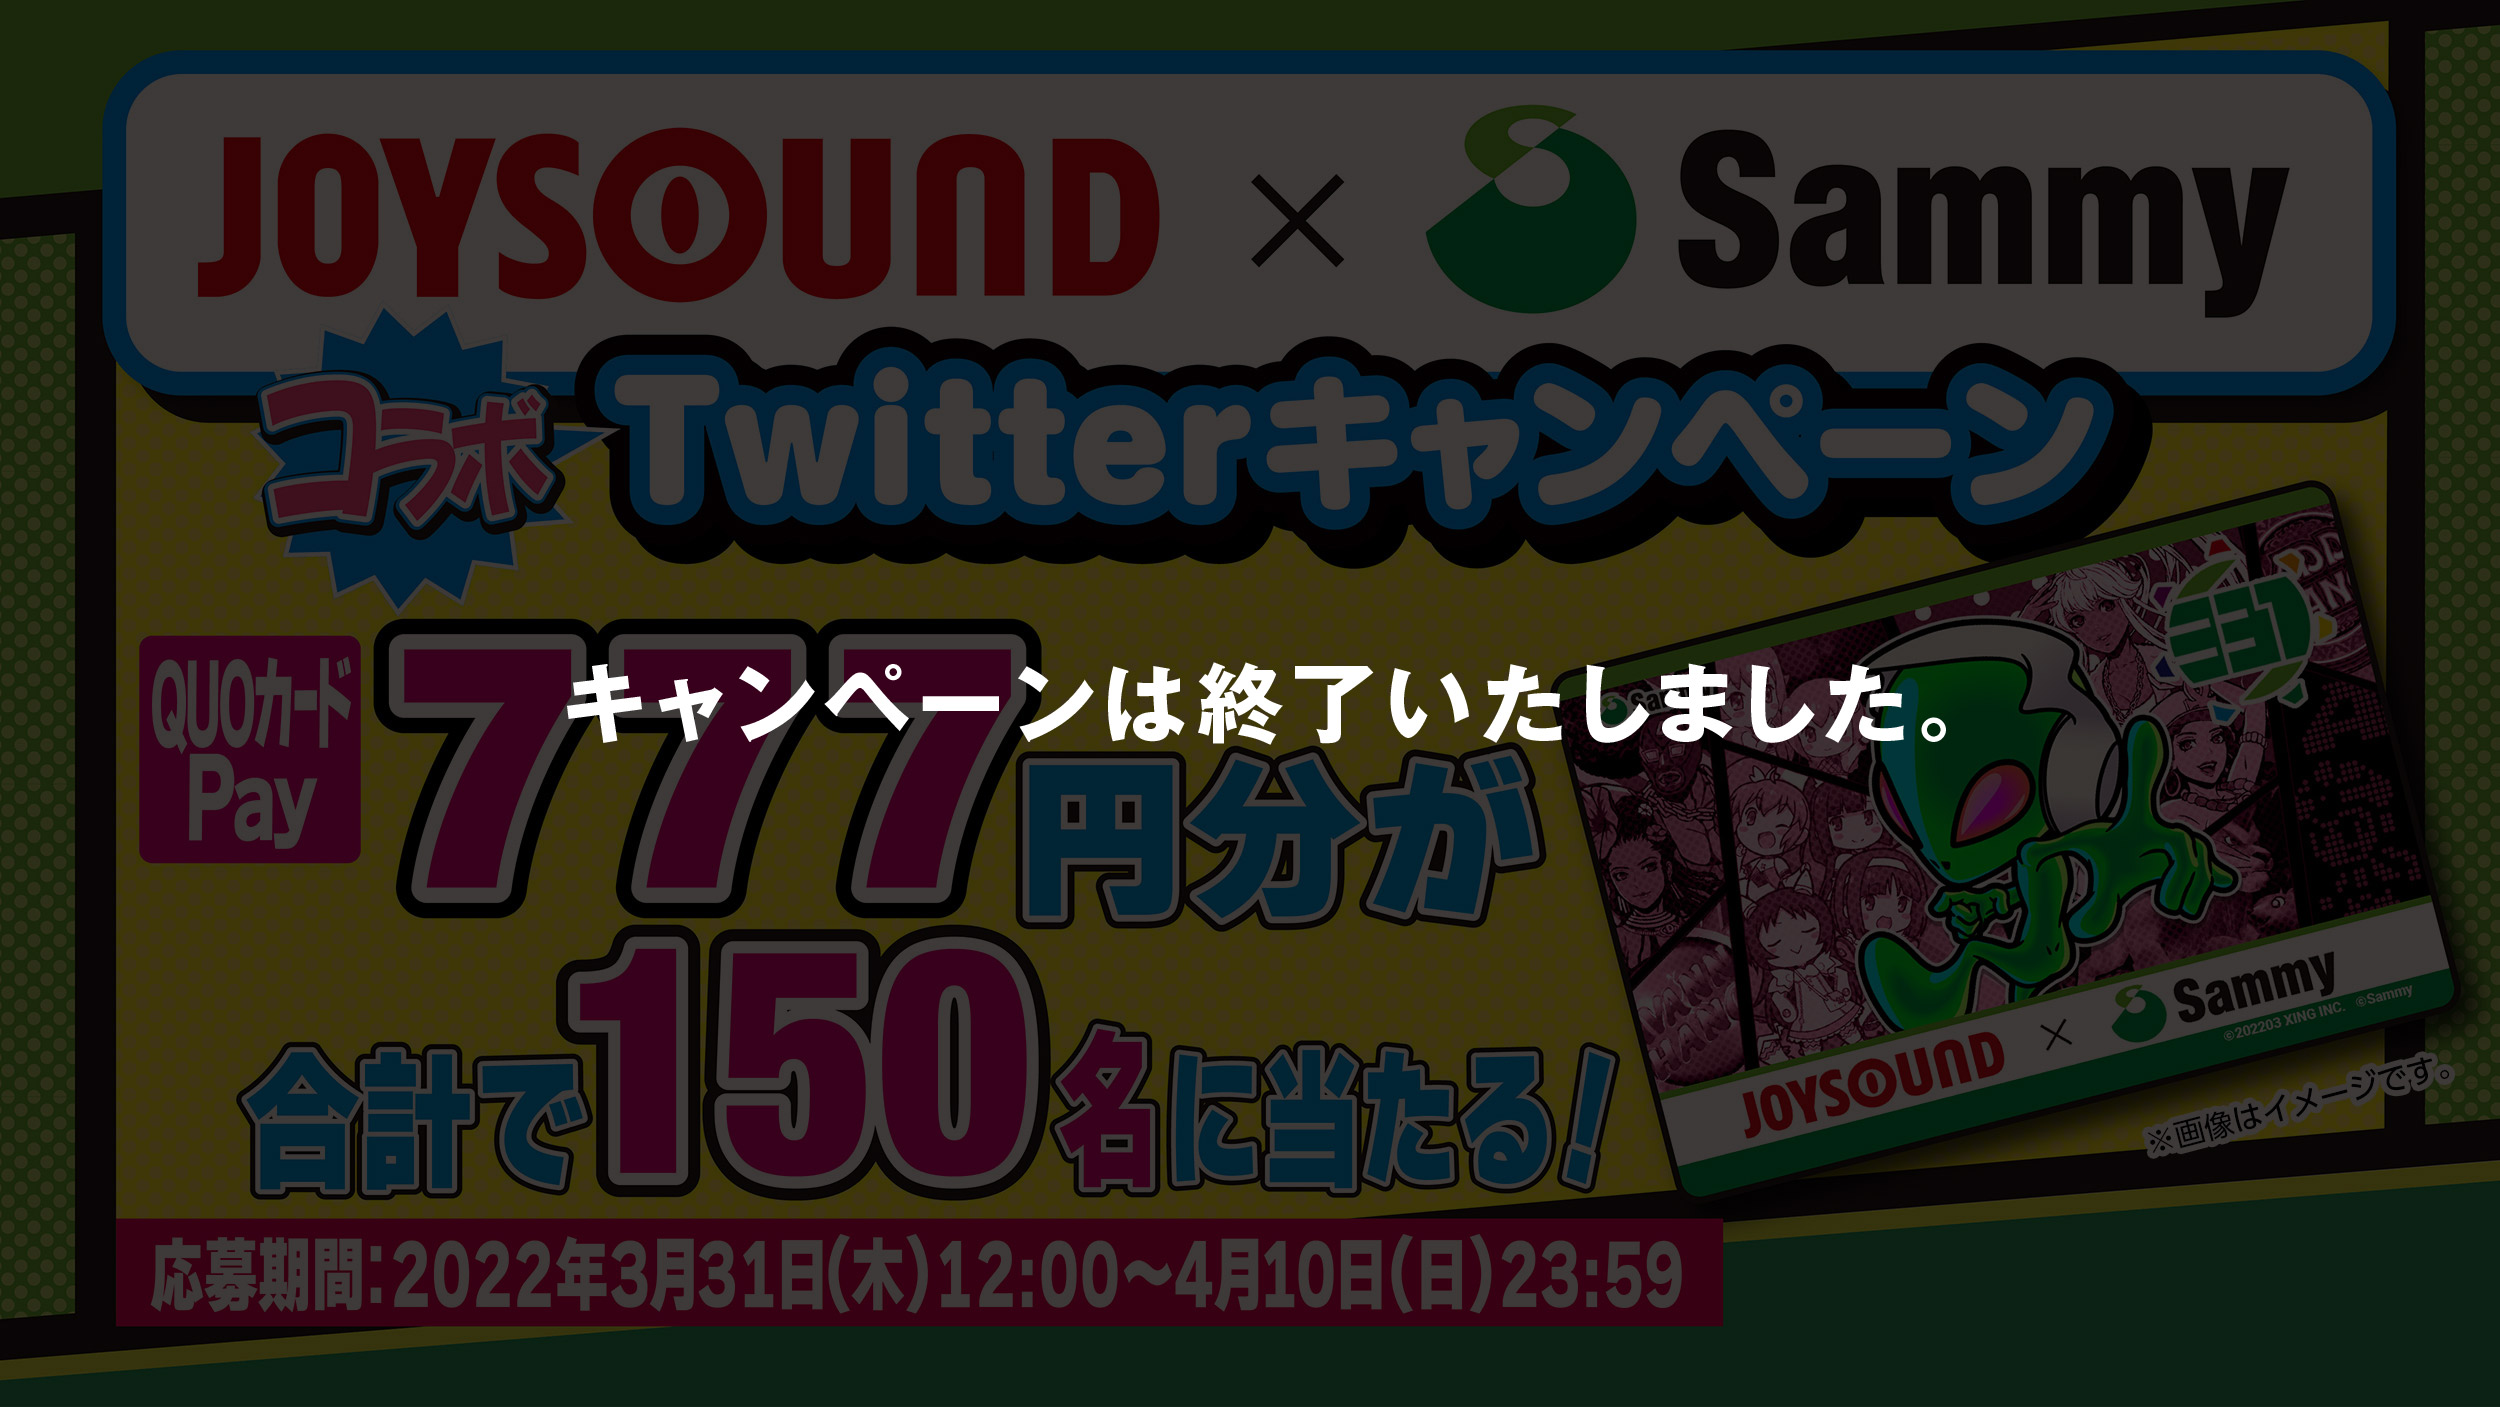 QUOカードPay777円分150名に当たる!Twitterキャンペーン 応募期間：2022年3月31日（木）12:00～4月10日（日）23:59